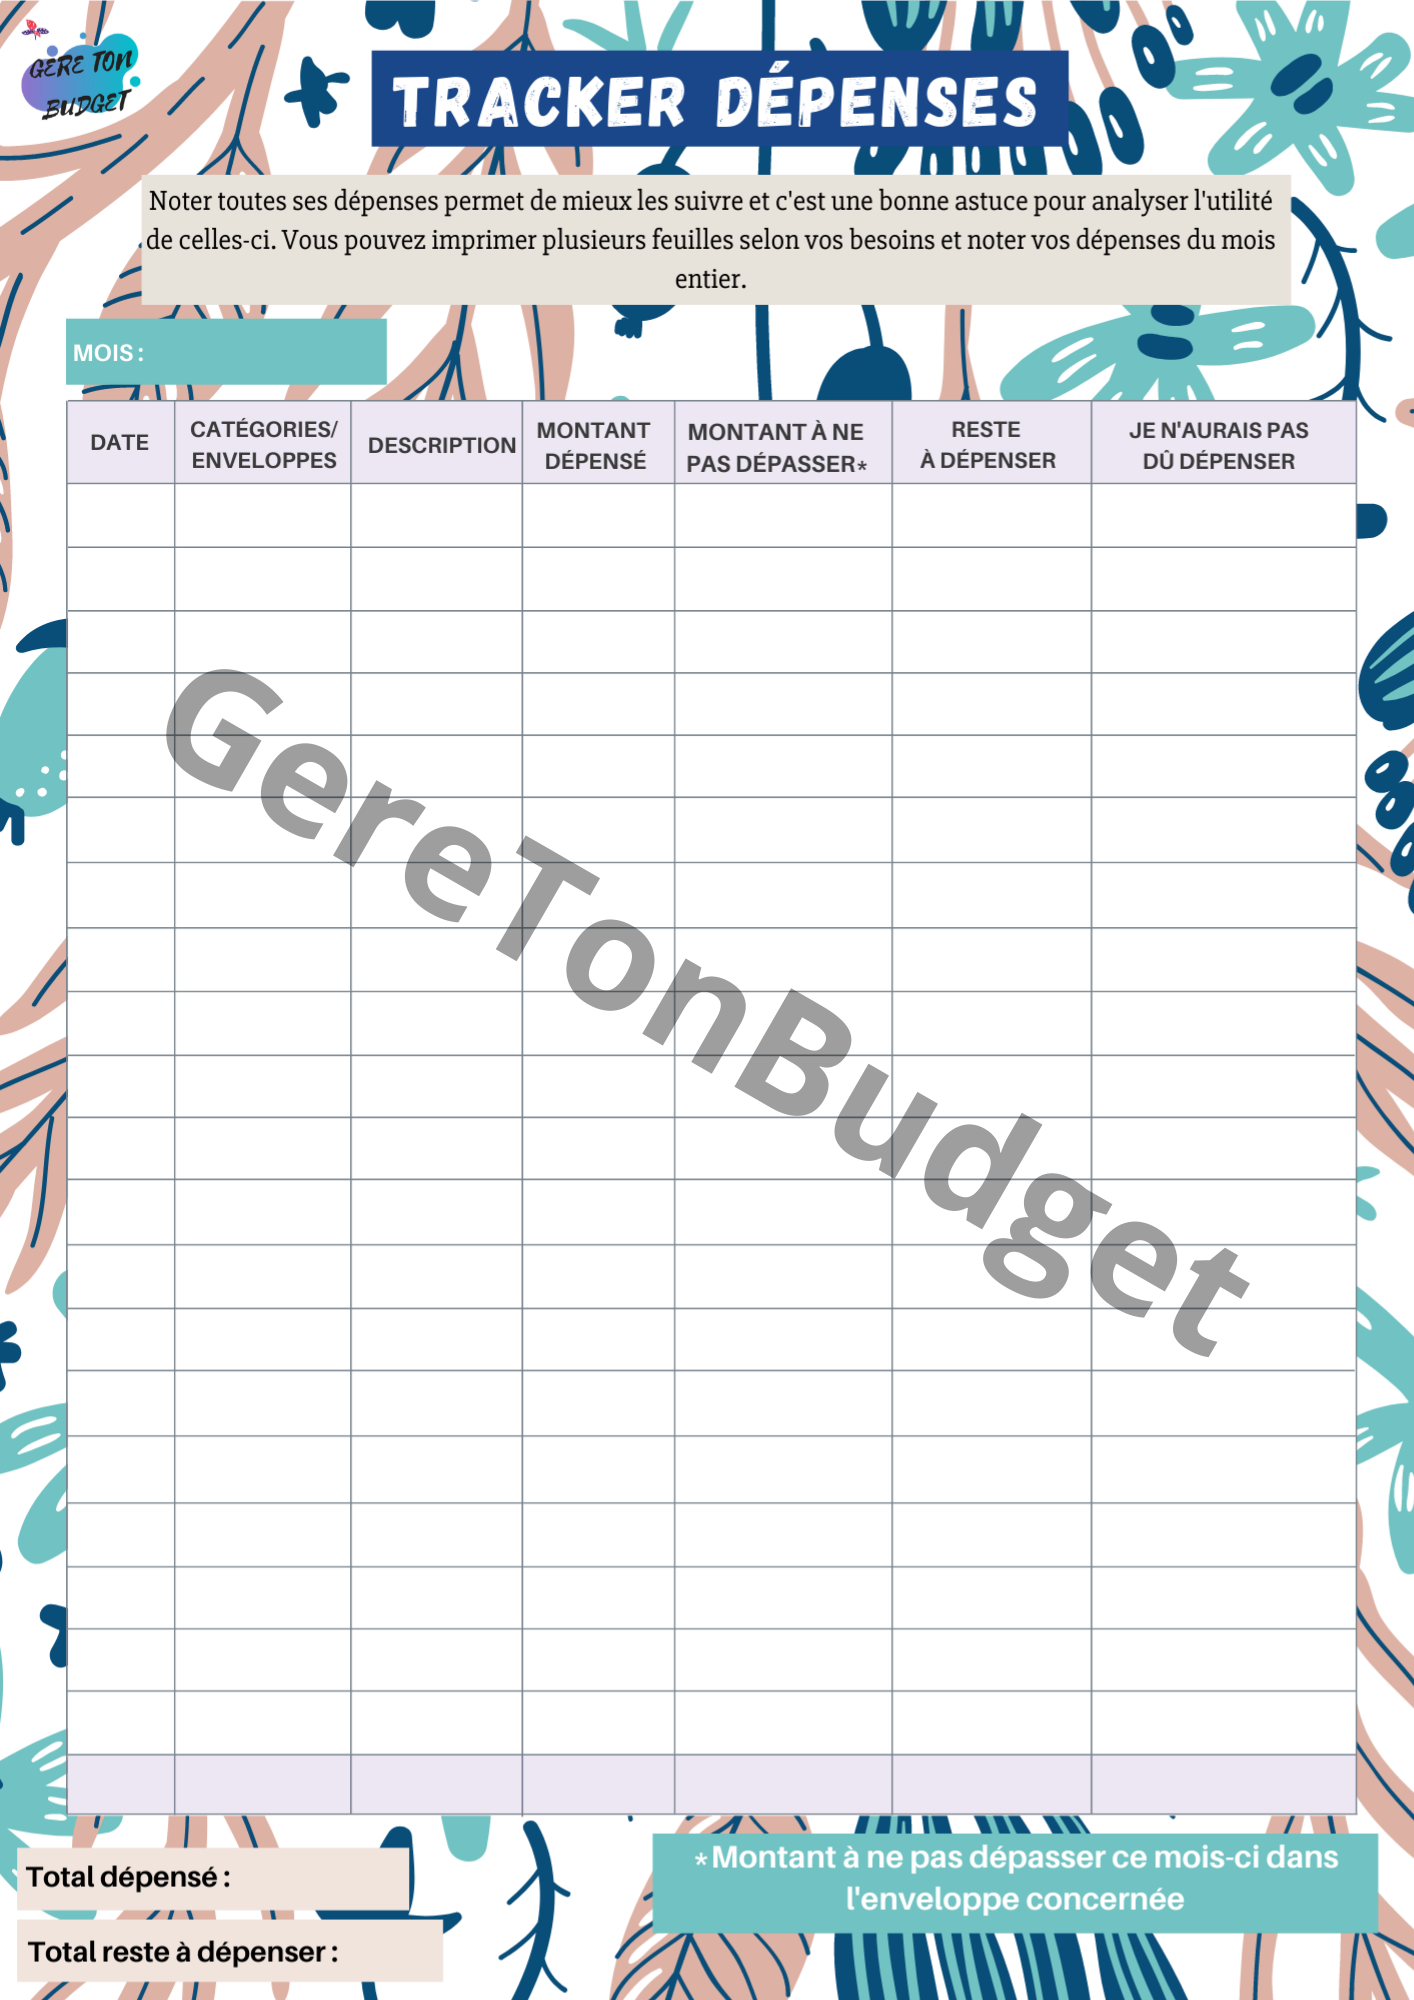 Budget Planner Agenda Budget A6 - Planificateur budgétaire avec  diapositives - Économies d'argent - Méthode de couverture - Planificateur  financier